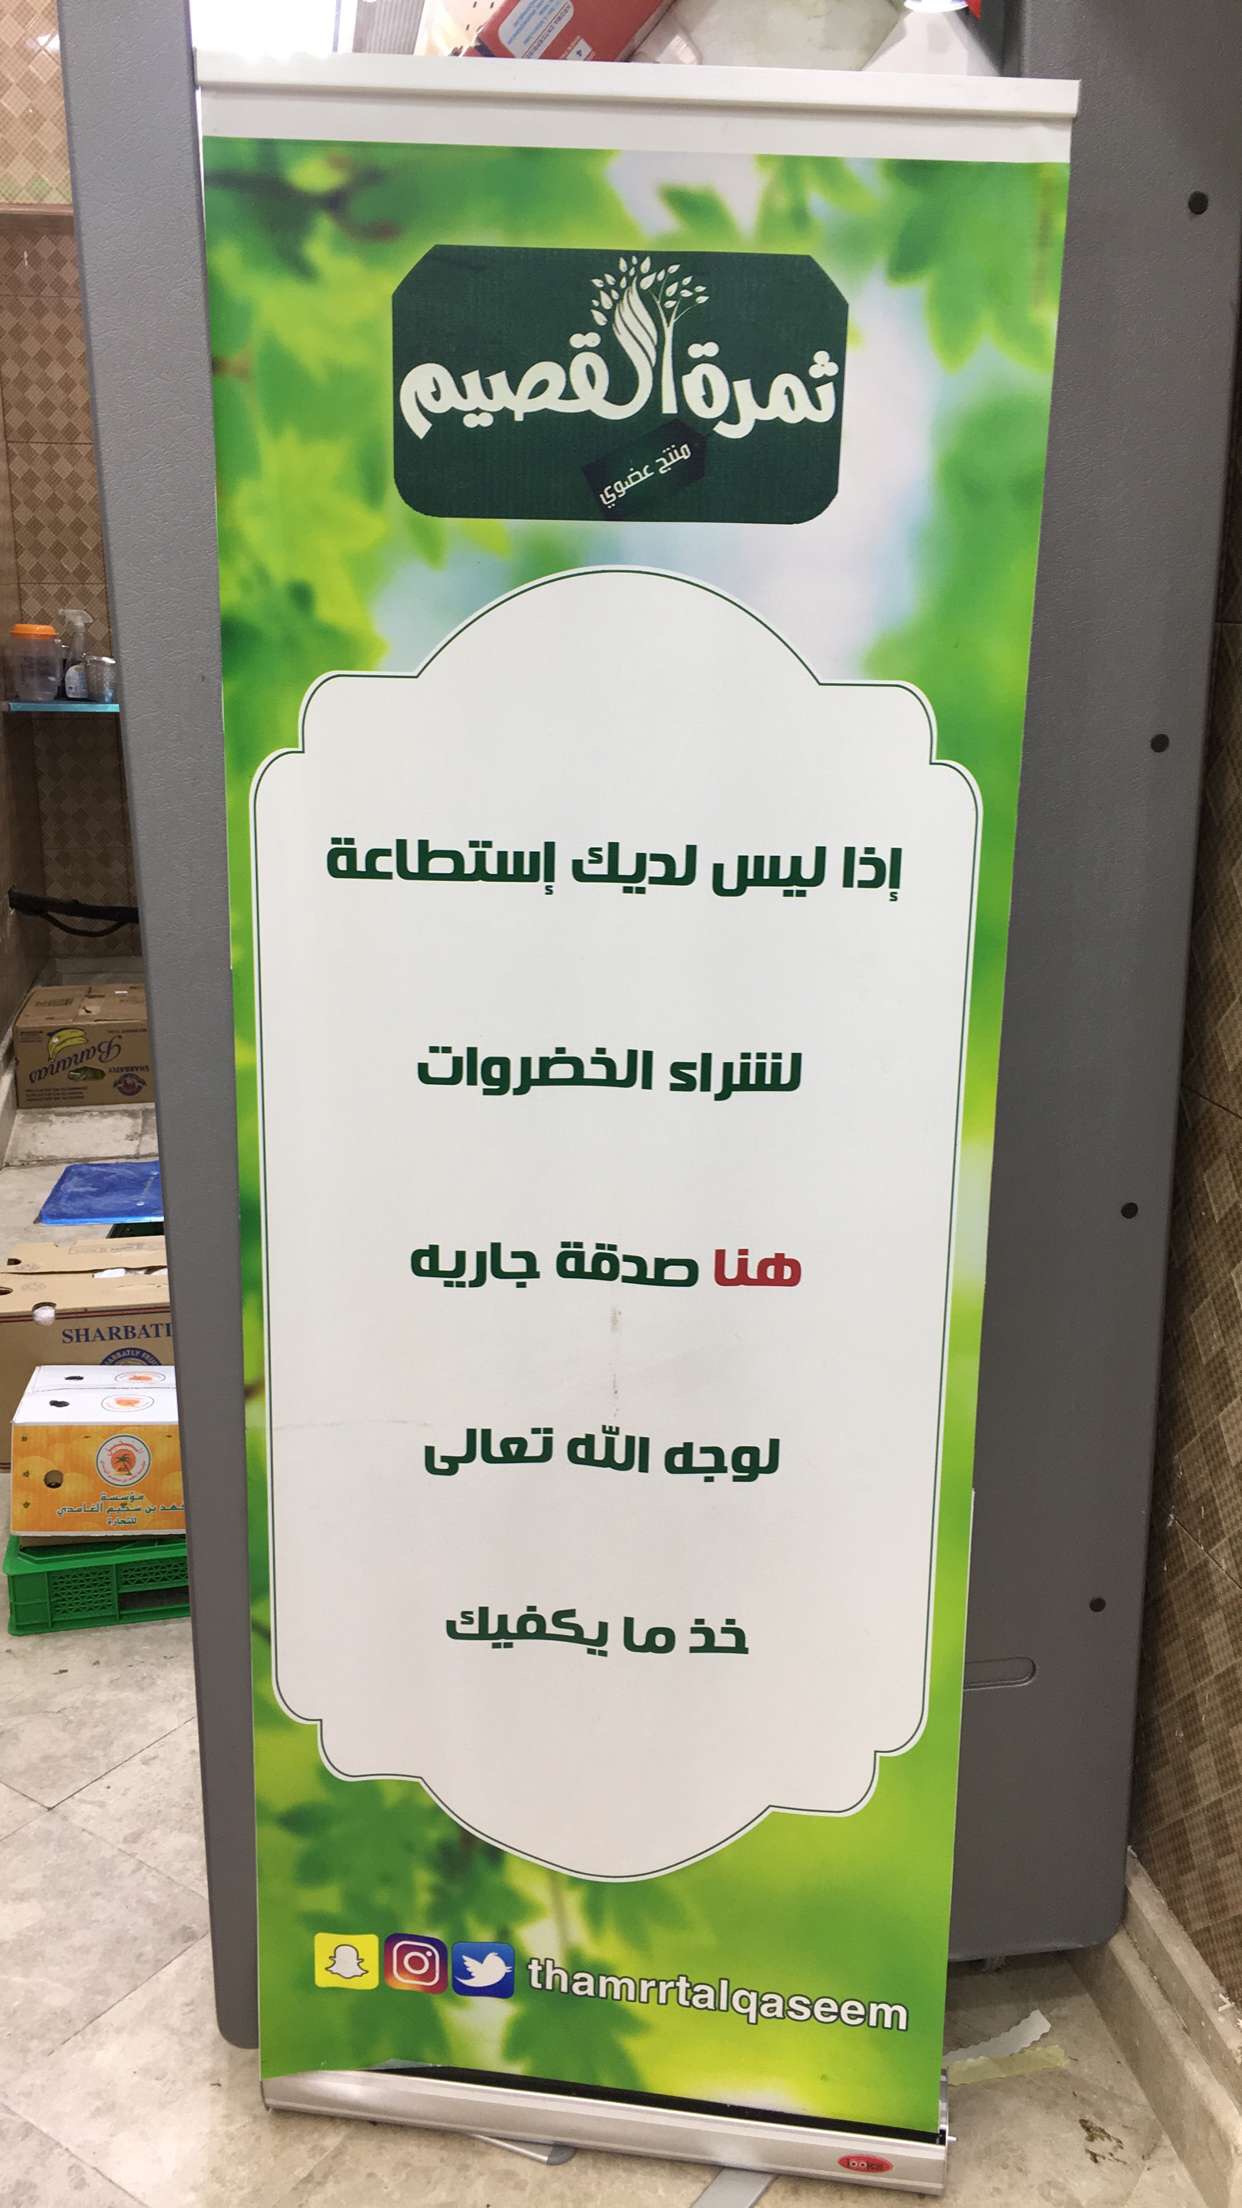 بالصور.. سوبر ماركت في مكة له الثواب وللمحتاجين خضروات مجانًا